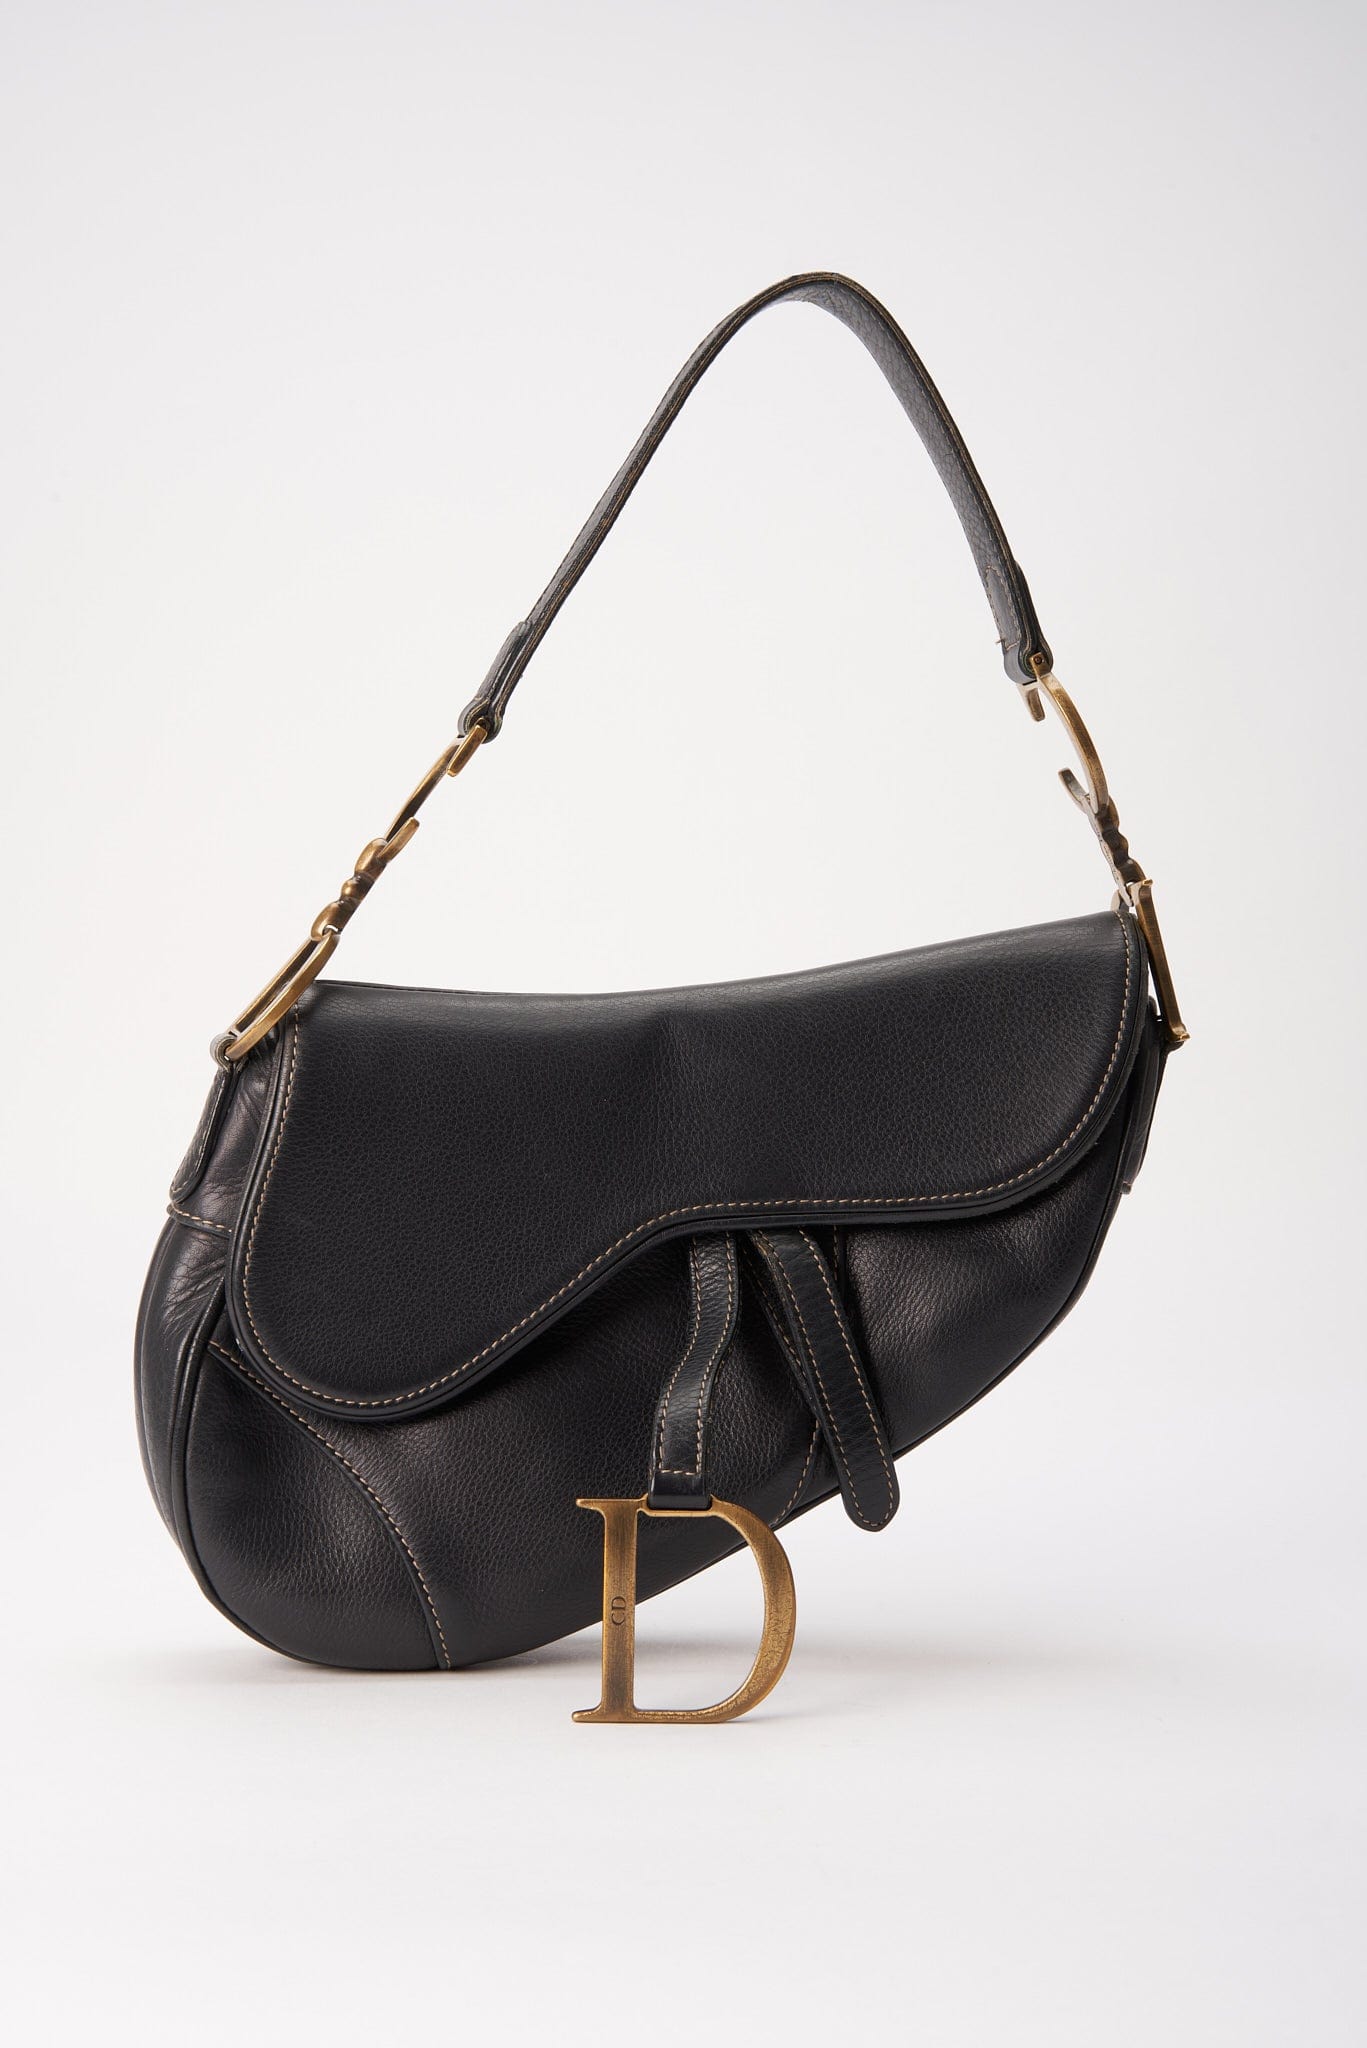 Christian Dior Pre-Owned Mini Lady Dior Handbag - Farfetch